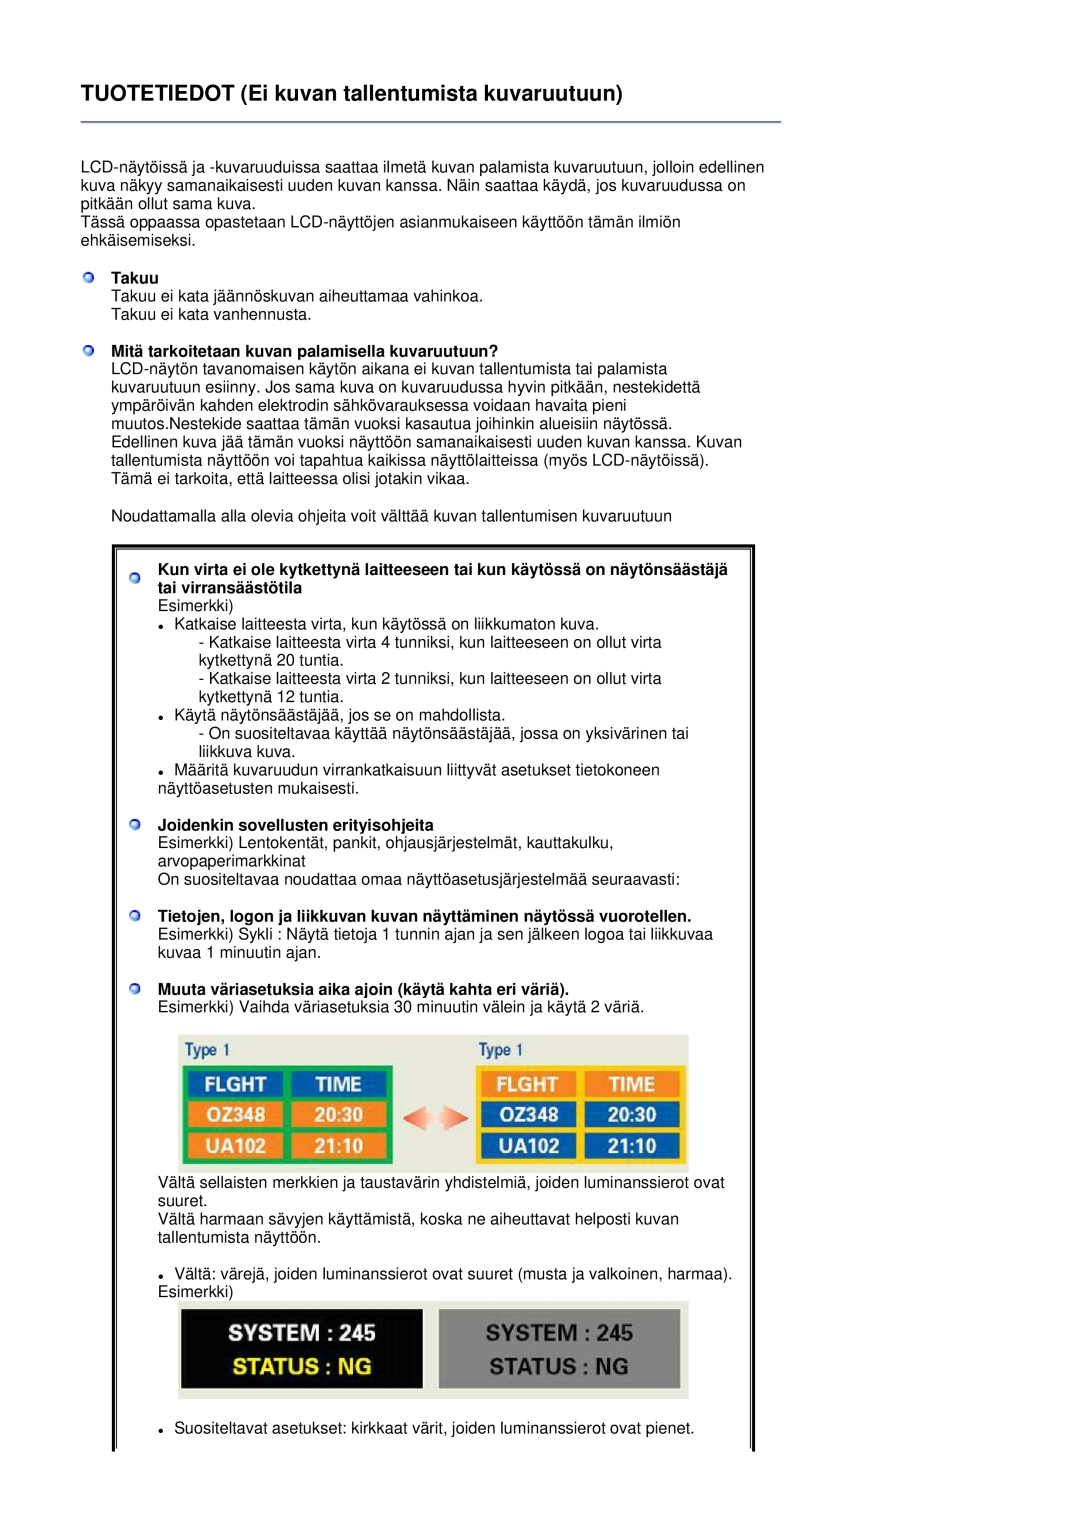 Samsung LS24HUCEBQ/EDC manual Takuu, Mitä tarkoitetaan kuvan palamisella kuvaruutuun?, Joidenkin sovellusten erityisohjeita 